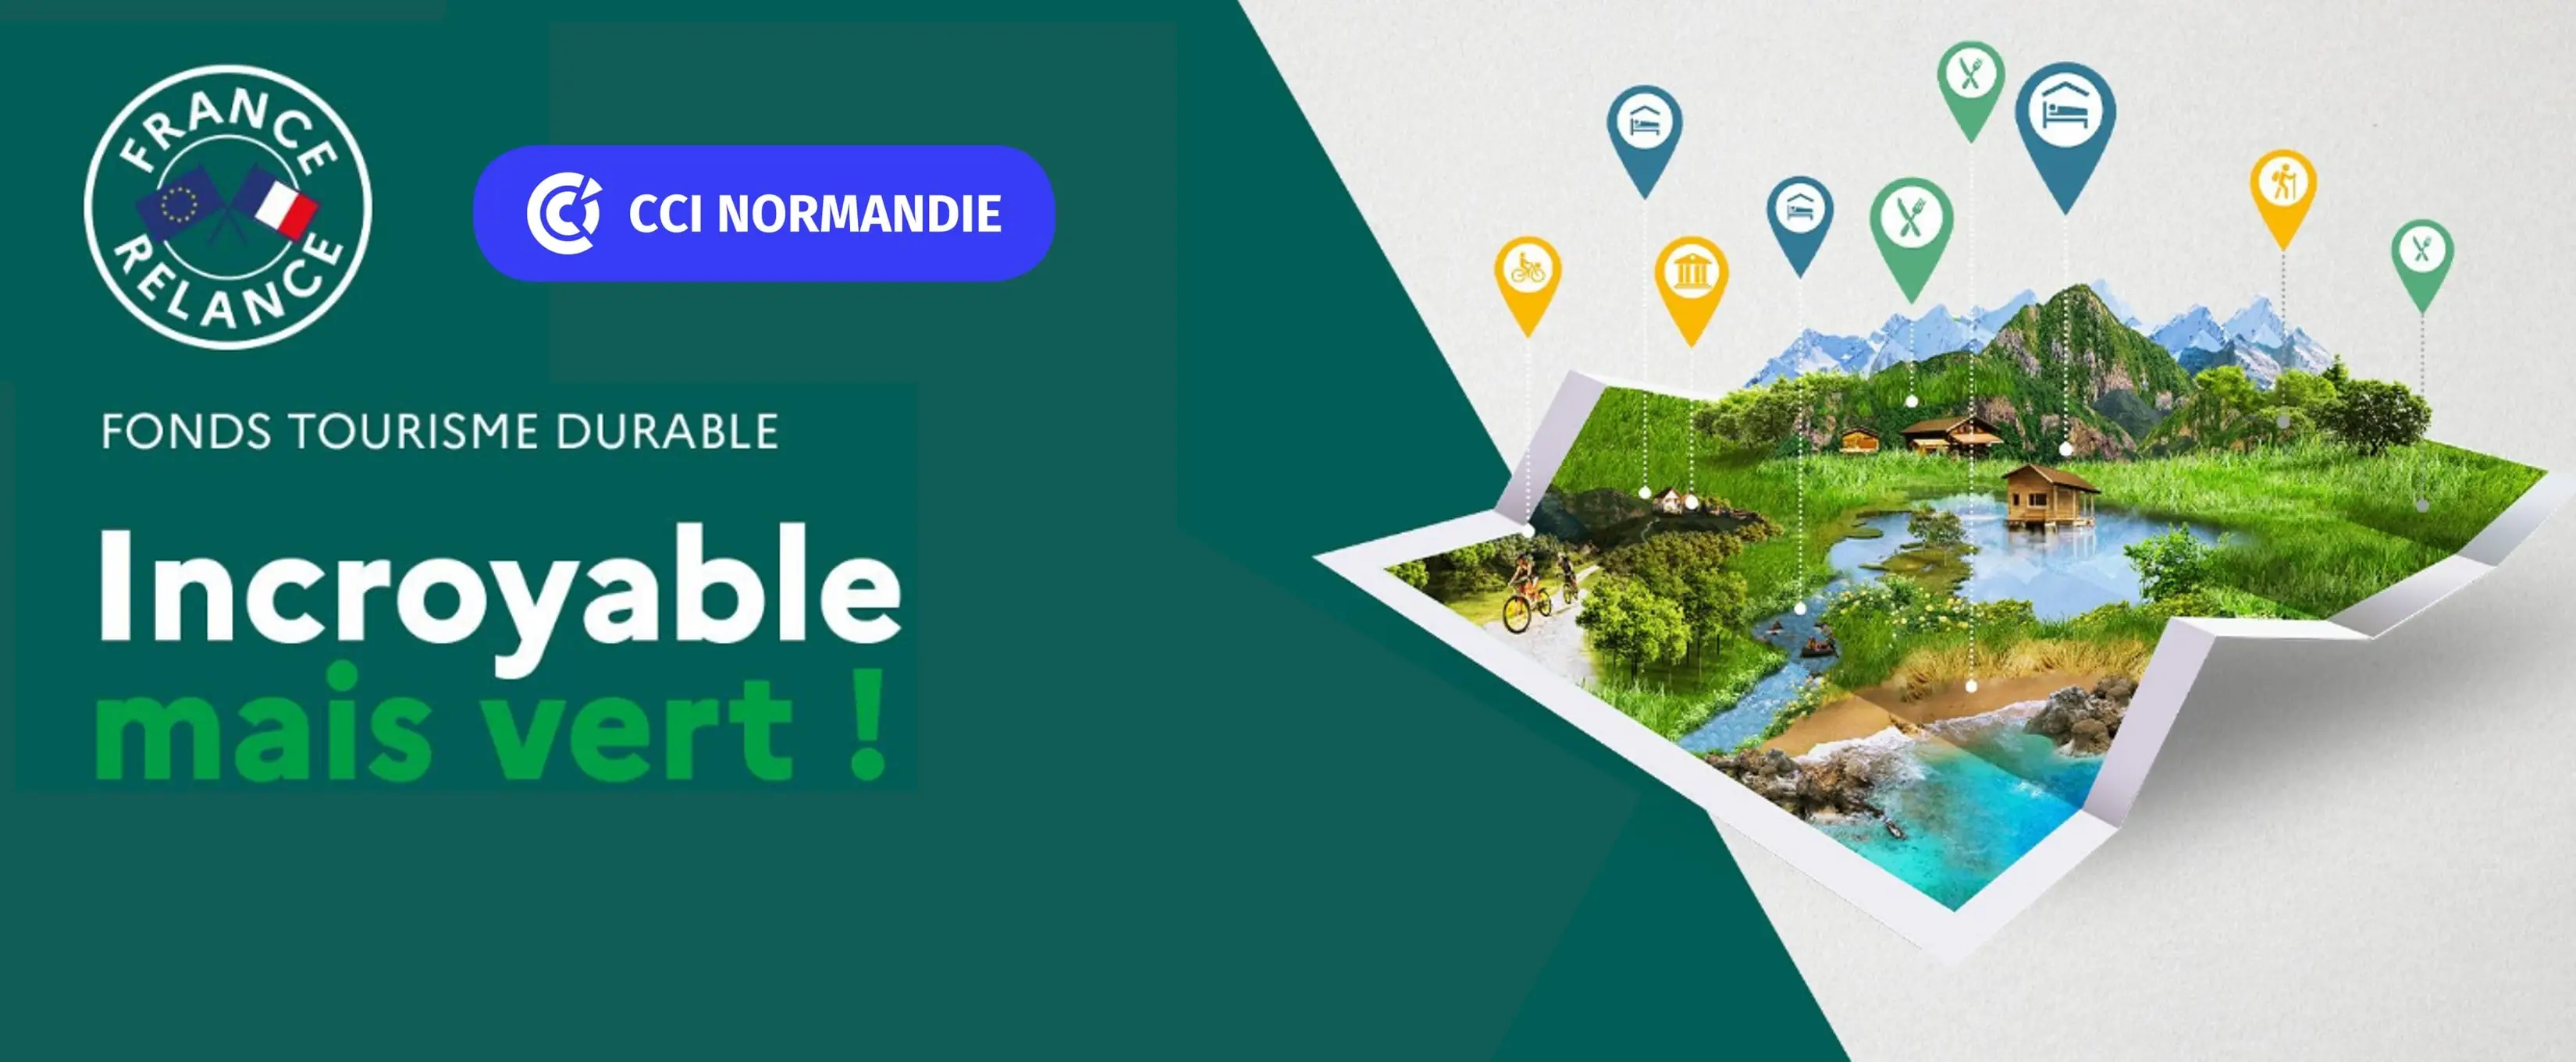 Fonds Tourisme Durable CCI Normandie